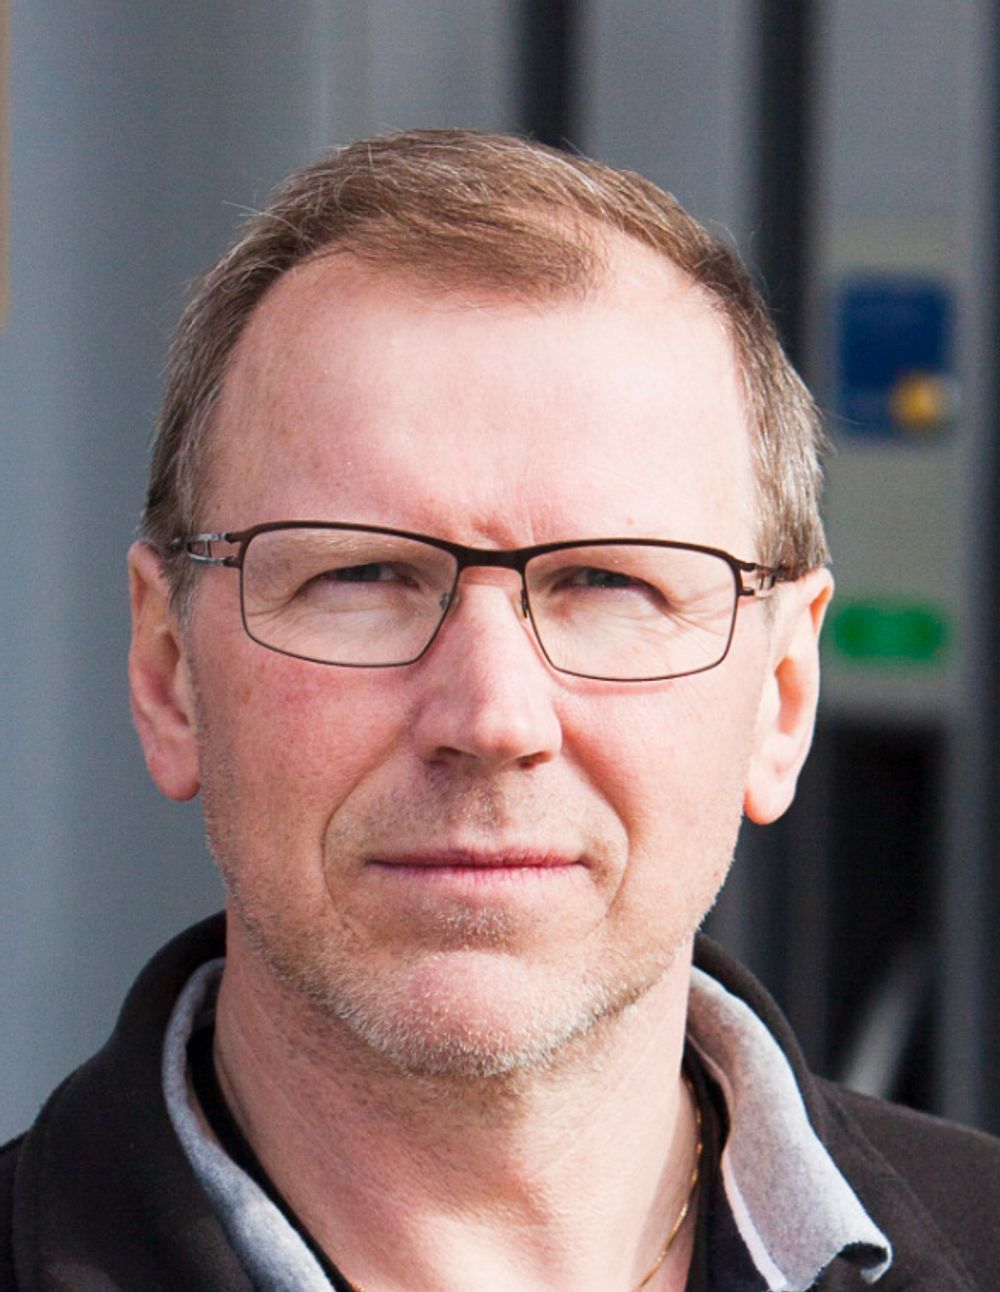 Kan motor: Sivilingeniør og konsulent i motor og brennstoffteknologi, Knut Skårdalsmo, tror VW-gruppen har jukset for å få ned forbruket av AdBlue.  